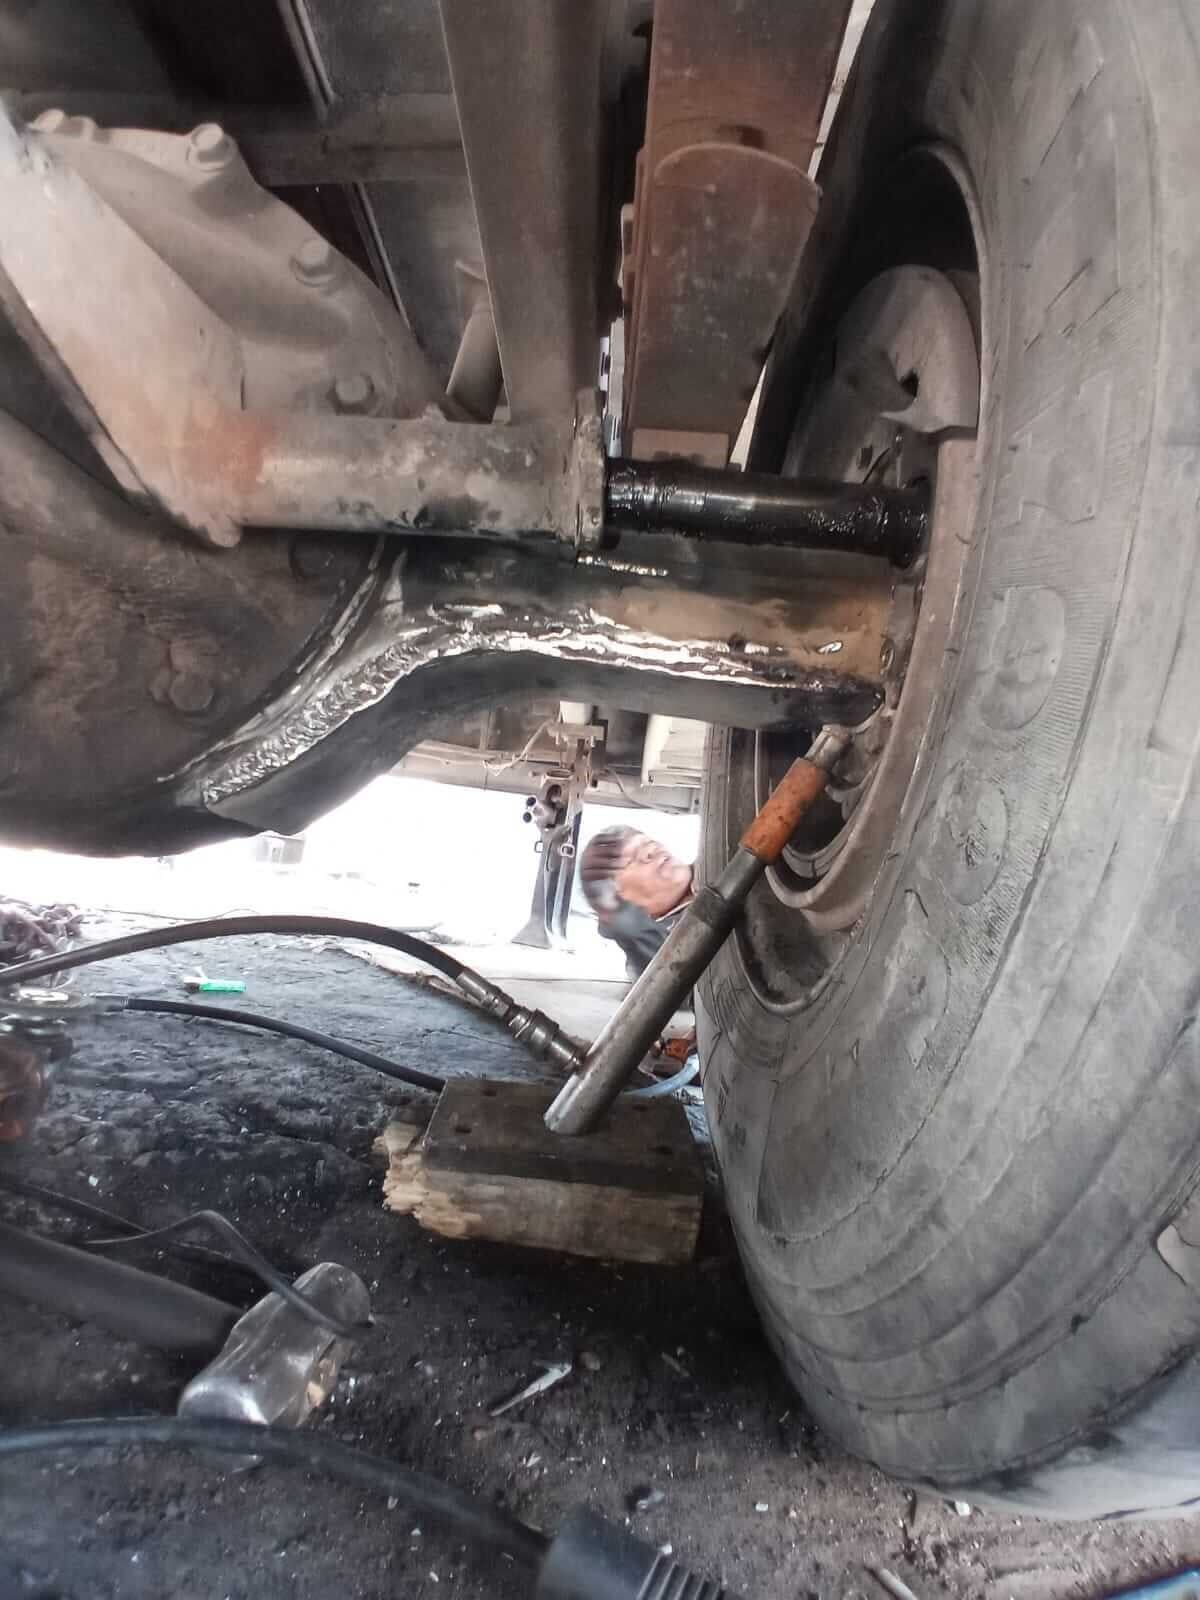 MUELLES Y PARTES AUTOMOTRICES CARRETO – Reparacion de cortinas en camion repartidor